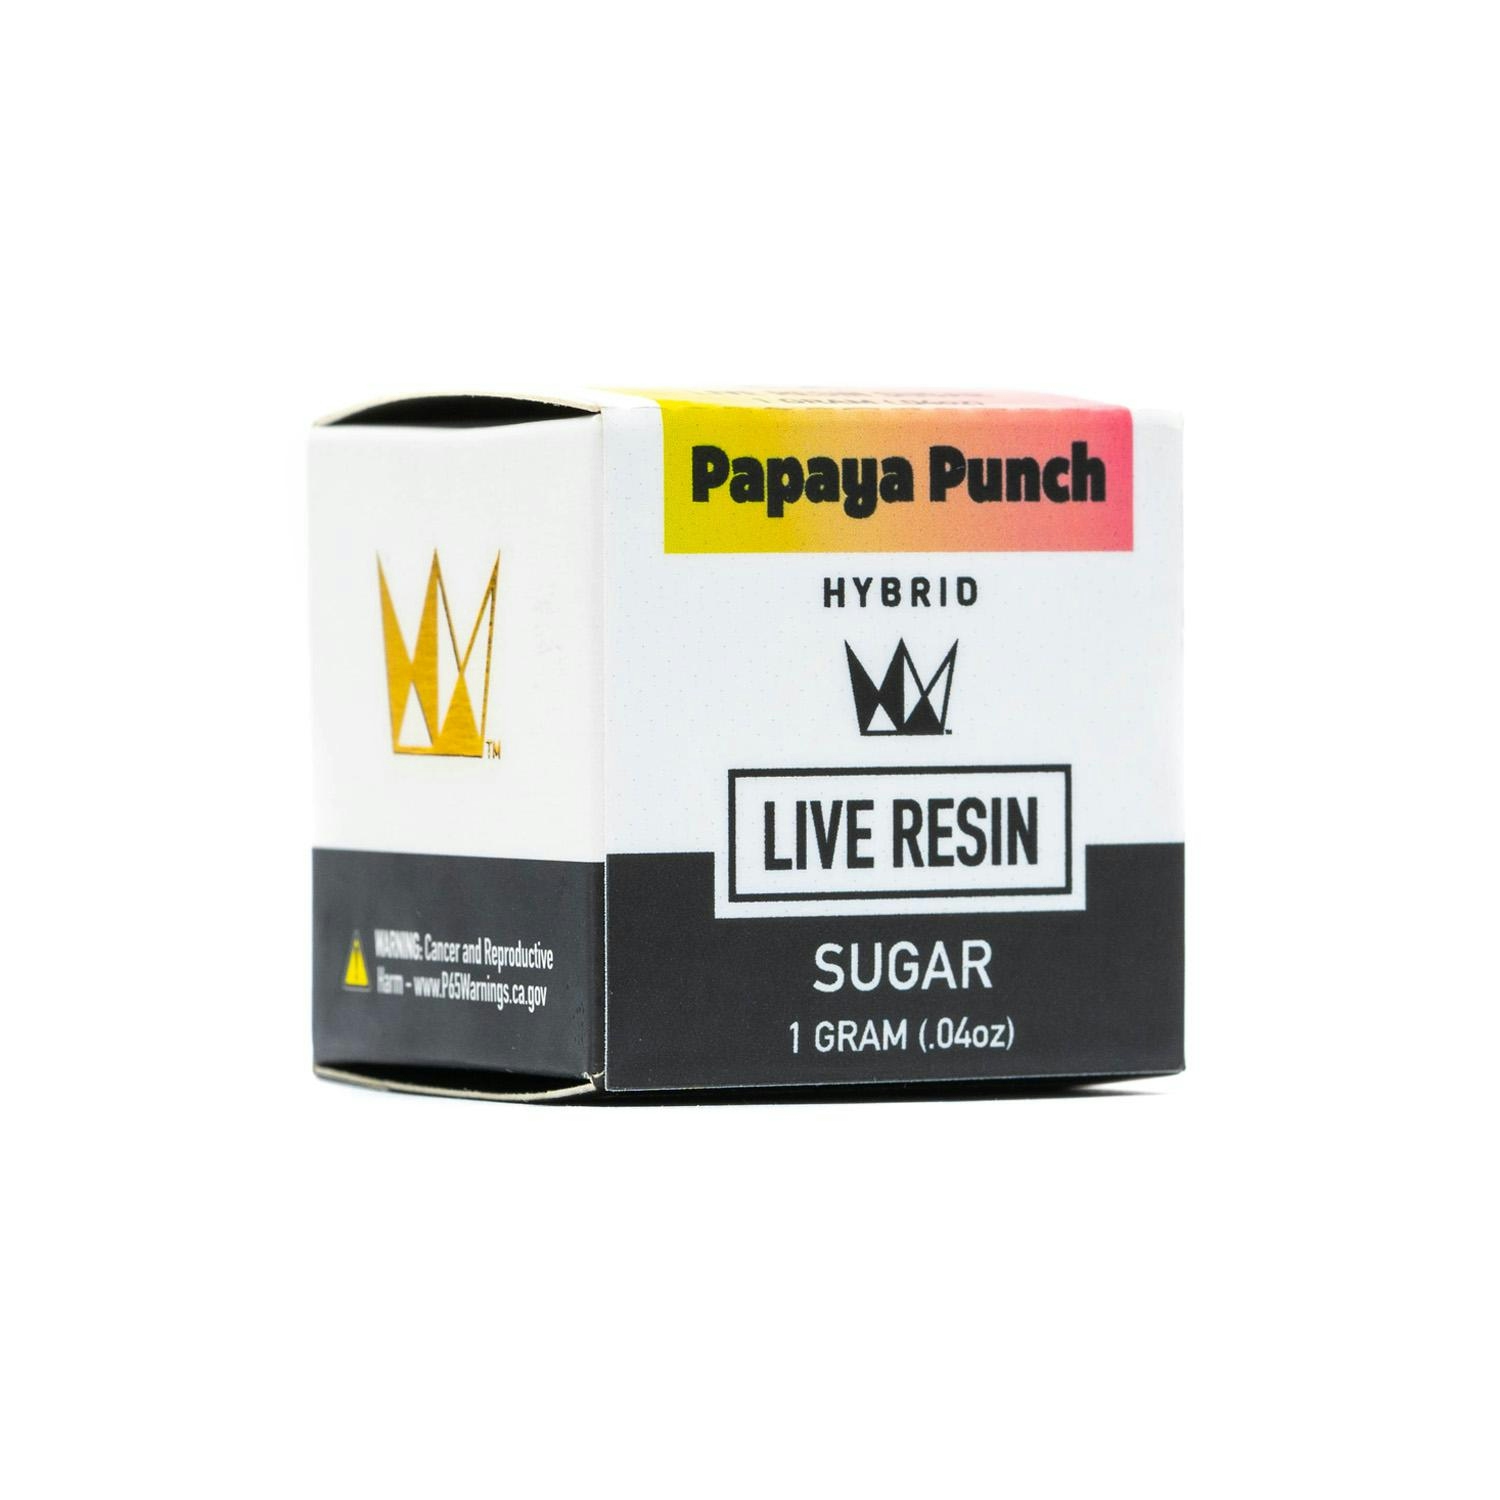 Papaya Punch Live Resin Sugar